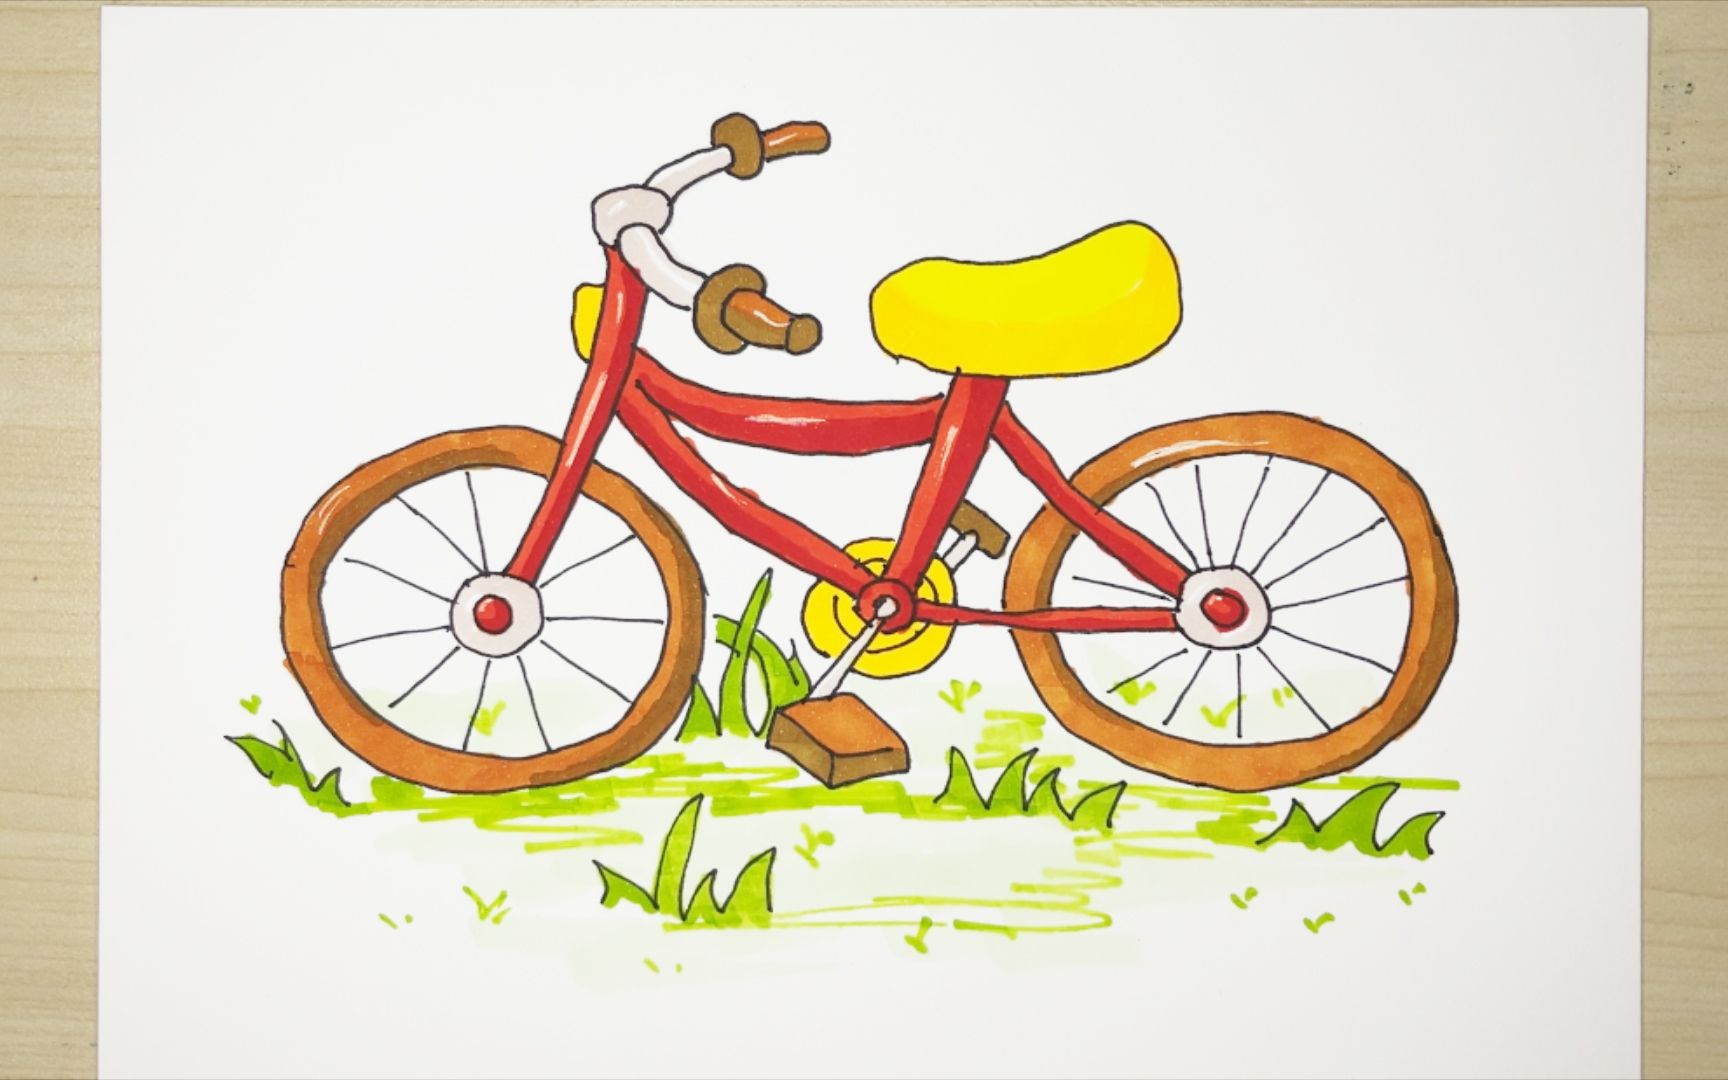 自行车涂色画颜色搭配图片